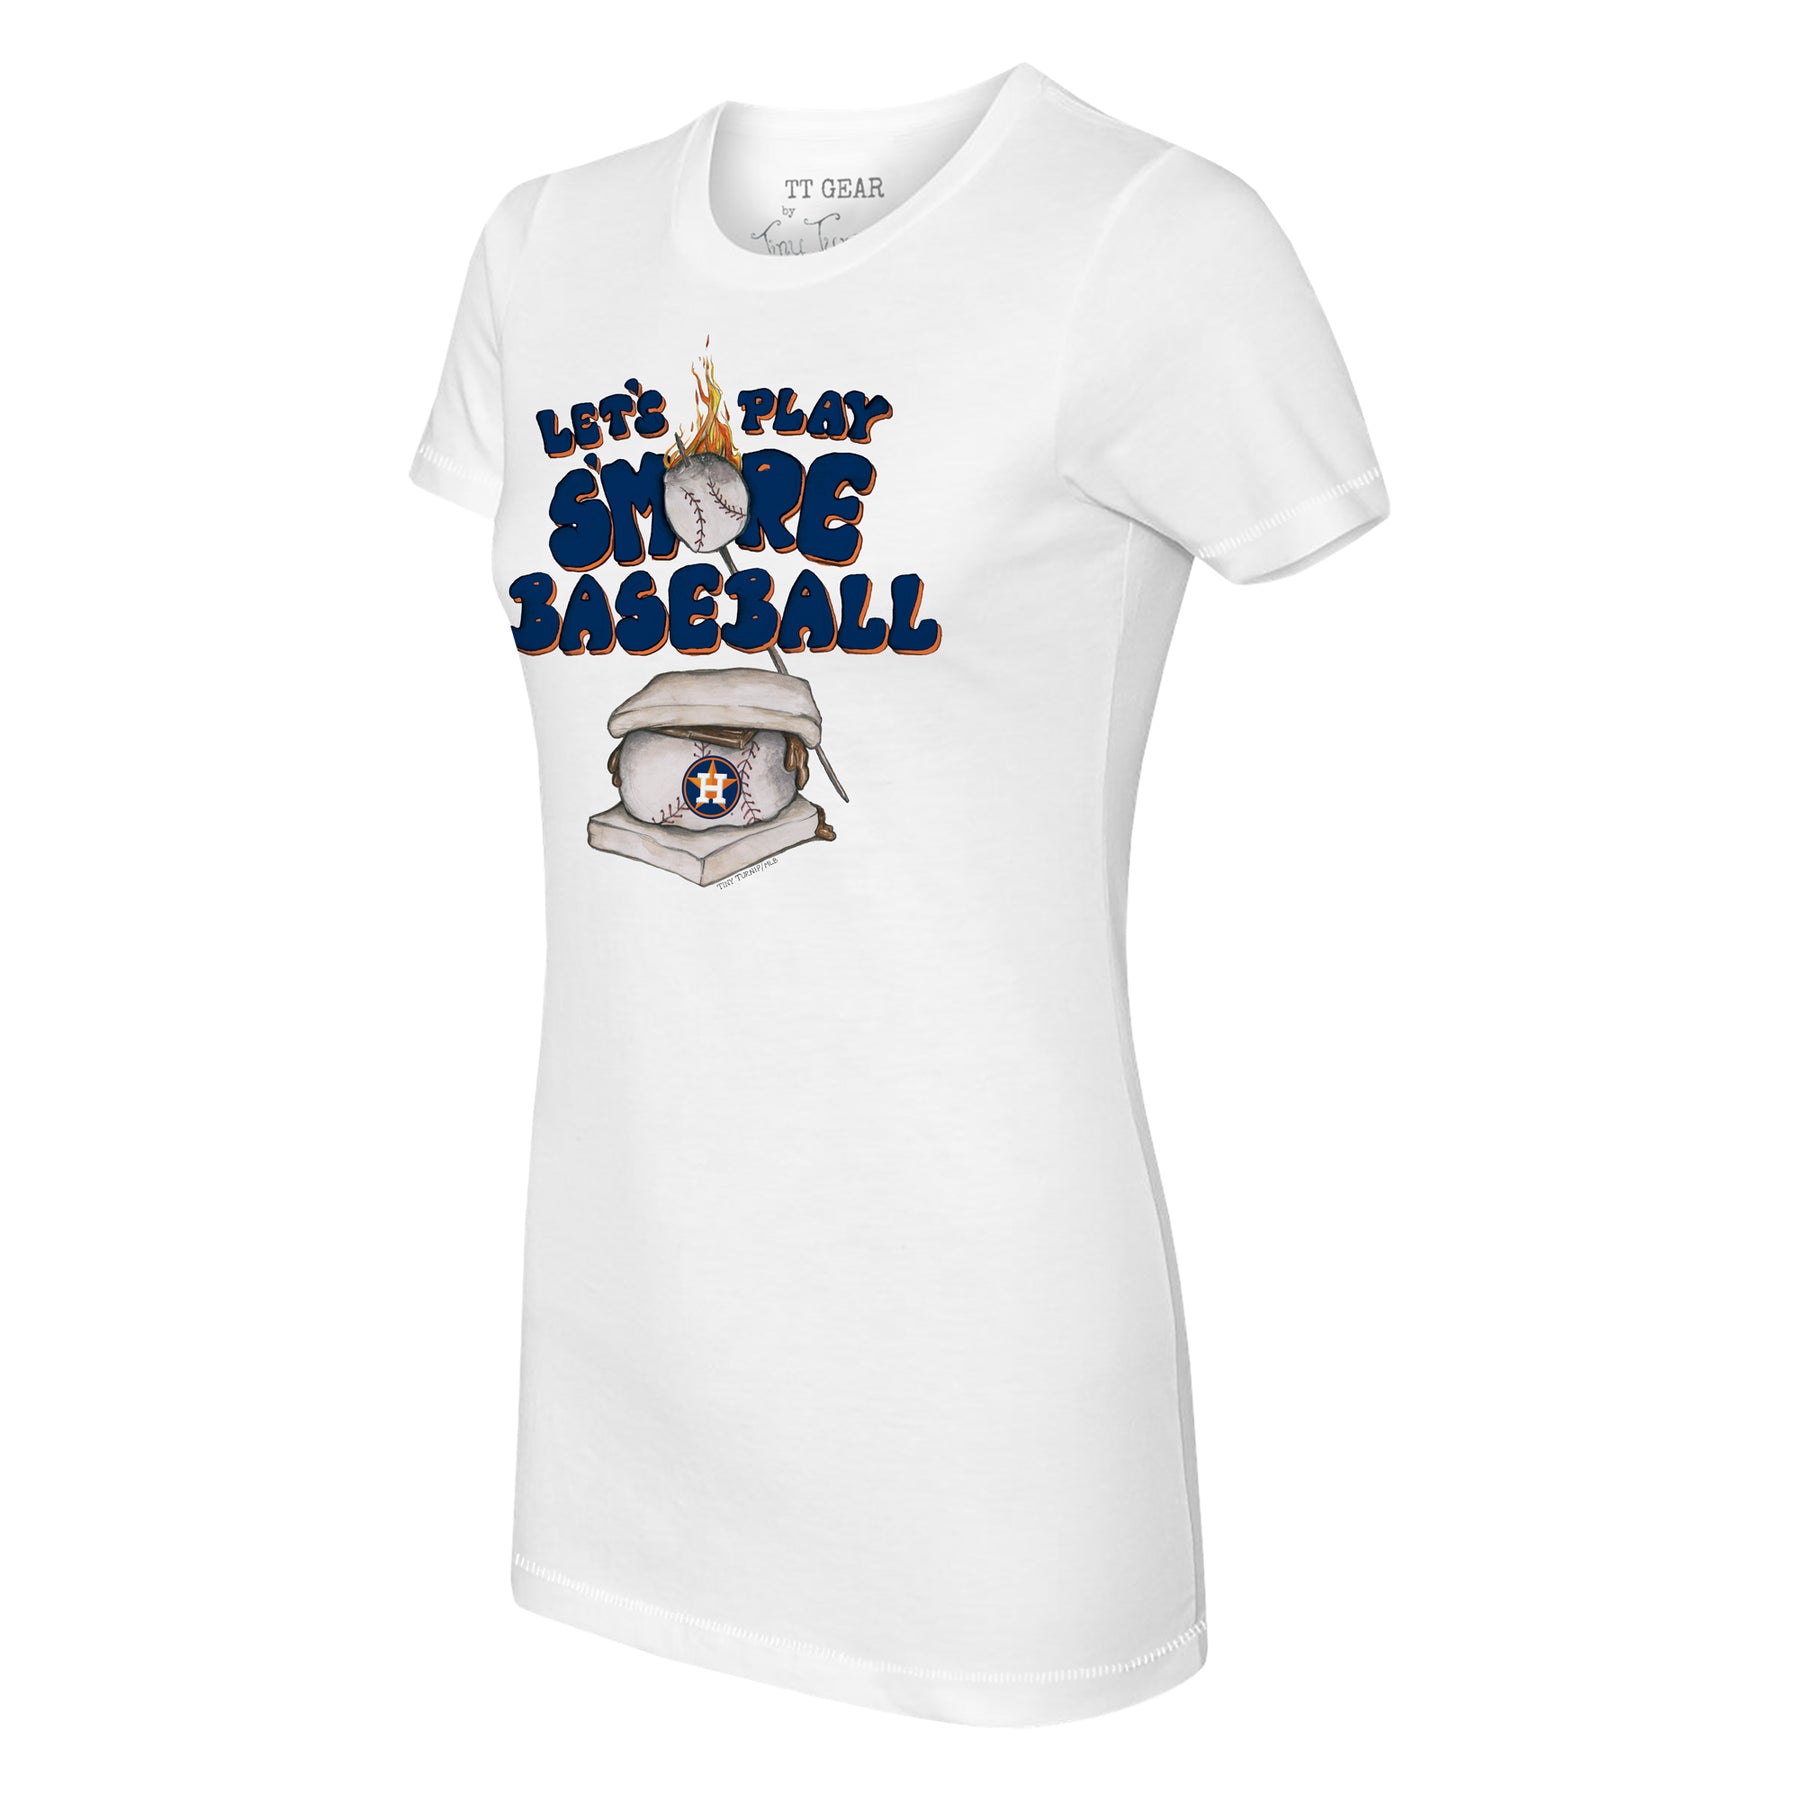 Tiny Turnip Houston Astros S'mores Tee Shirt Women's XS / White